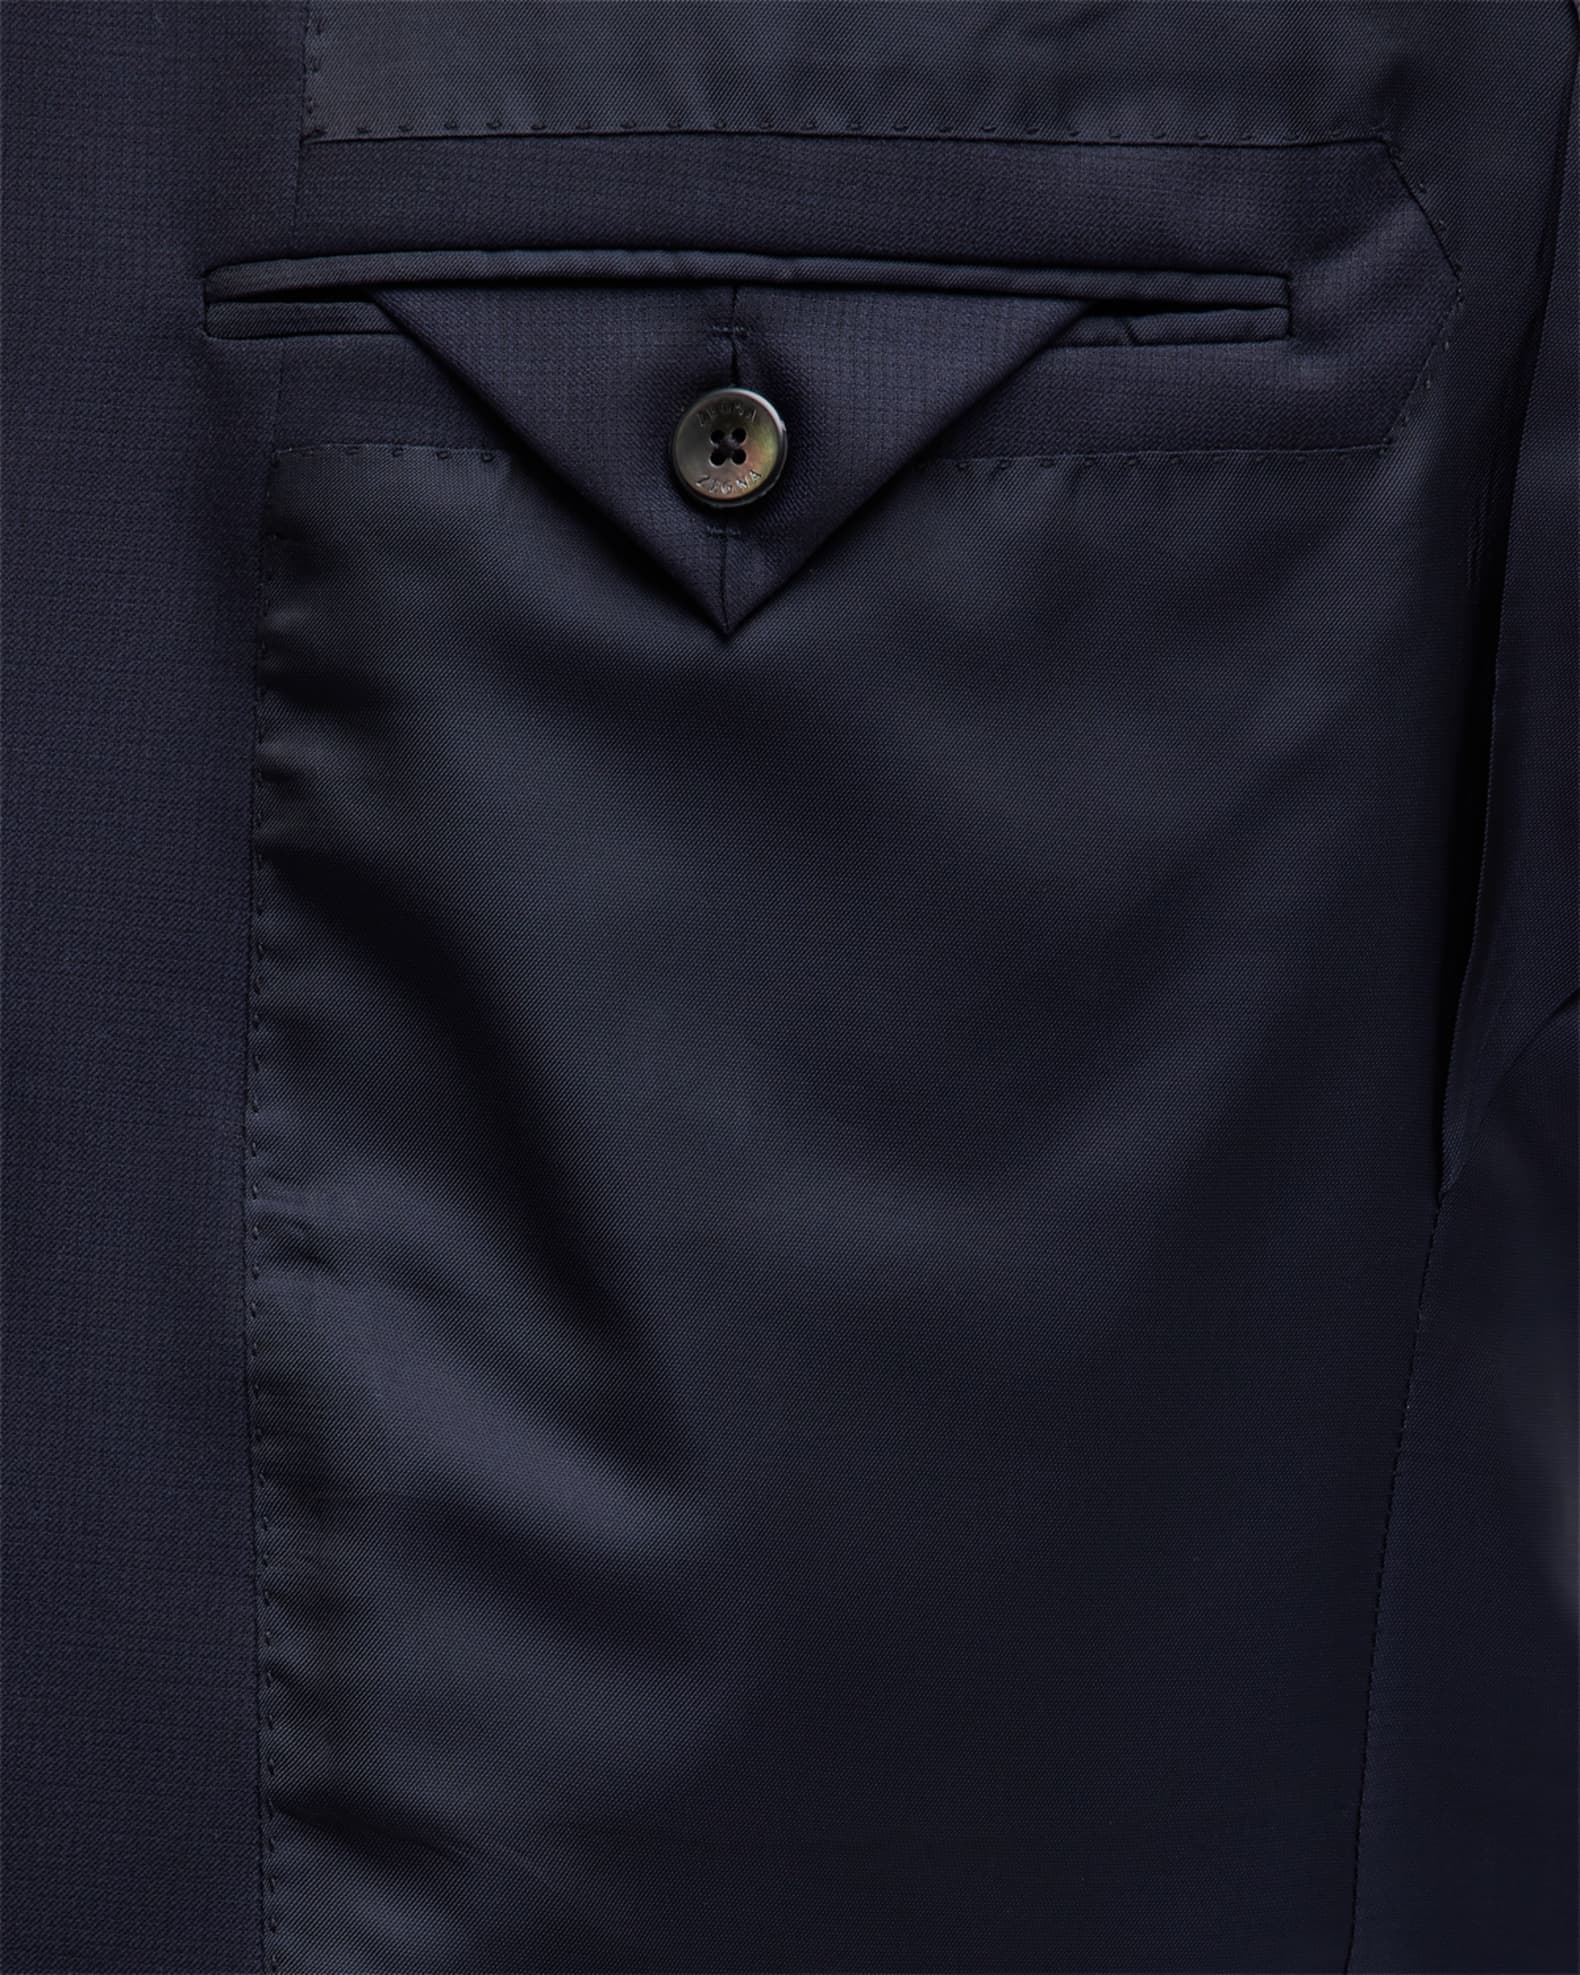 ZEGNA Men's 15milmil15 Micro-Check Wool Suit | Neiman Marcus